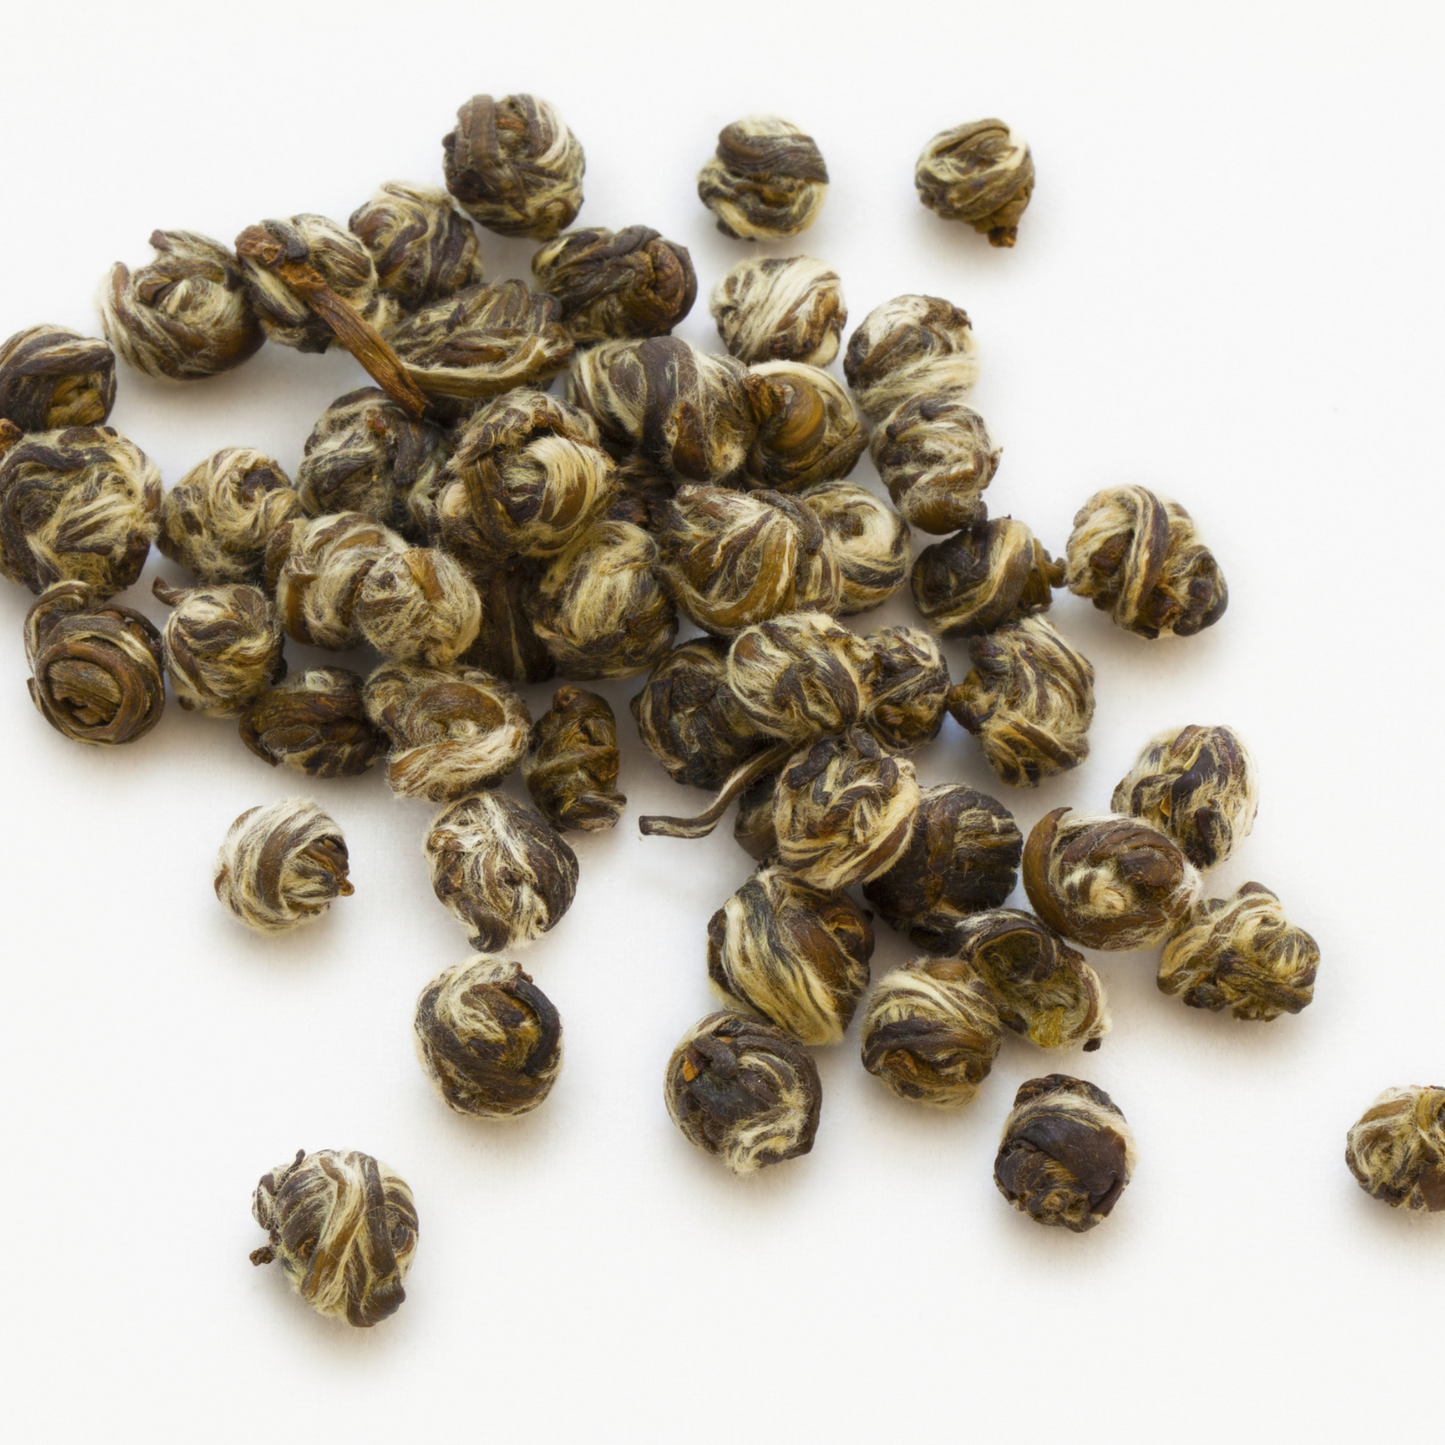 Jasmine Pearls, Dragon Pearls, Loose Leaf Jasmine scented Pan Fried Sencha Green Tea